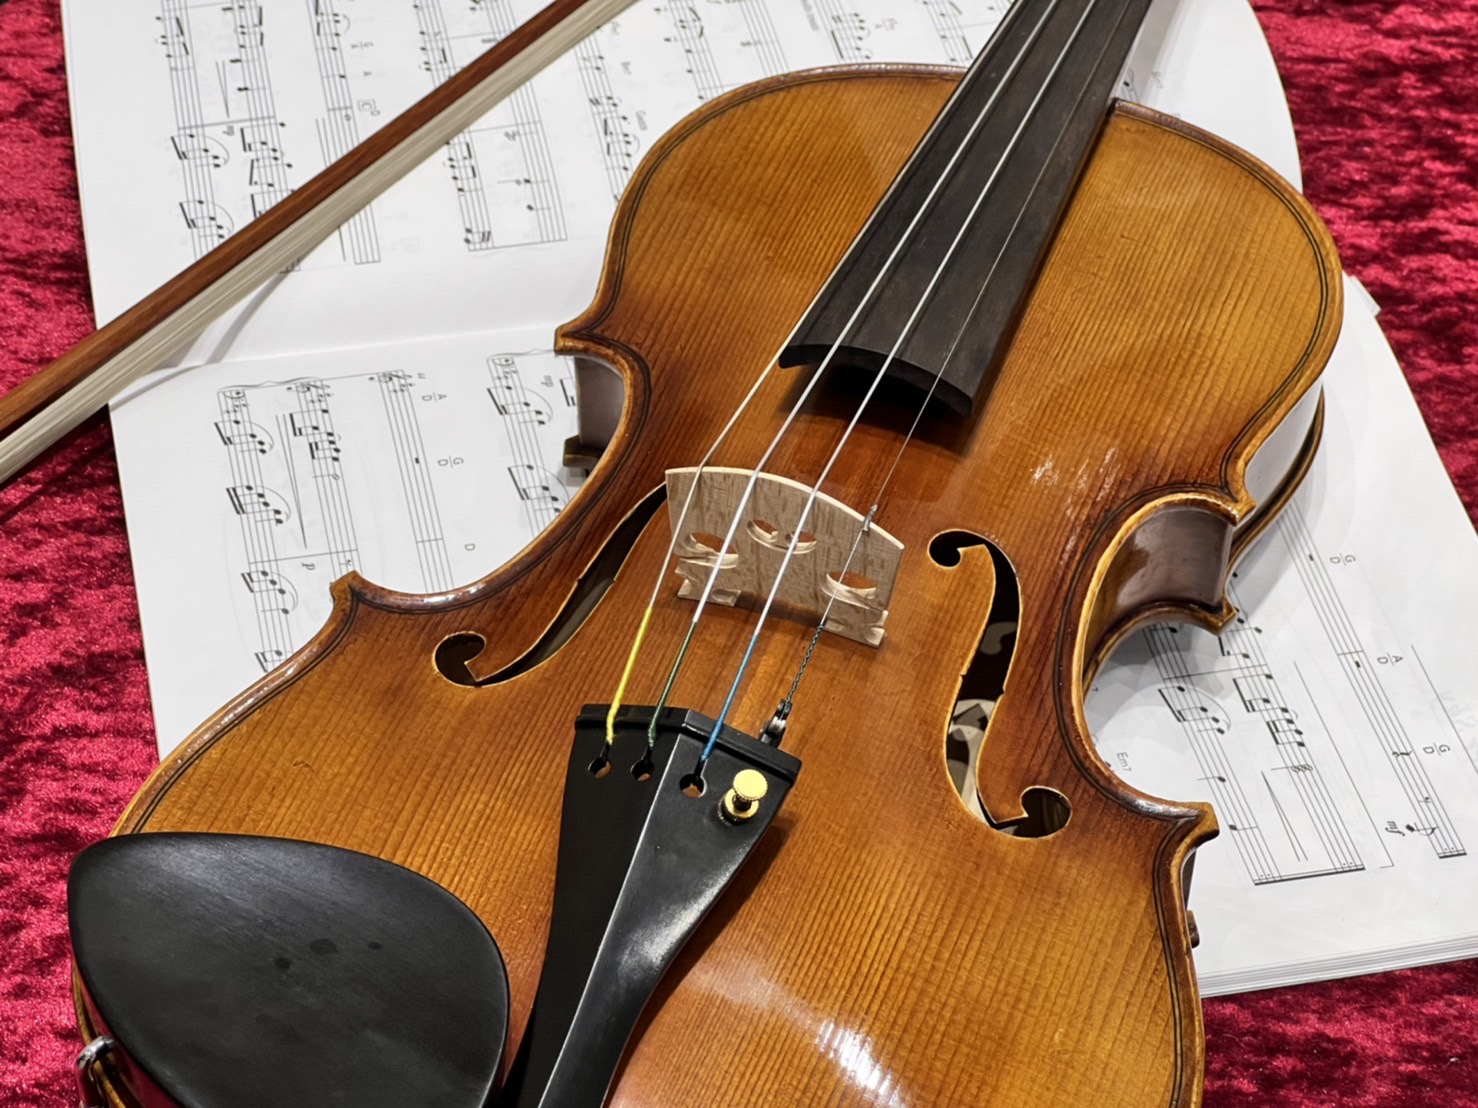 1度もバイオリンに触れた事がない方、憧れているけどなかなか踏み出せない方、まずは一緒にバイオリンを弾いてみませんか？バイオリンを始めてみたい皆様にピッタリのイベントを開催いたします！ ⇩過去のバイオリン体験会の様子⇩ CONTENTS体験会の内容開催日程担当する弦楽器アドバイザー紹介お申し込みはこち […]